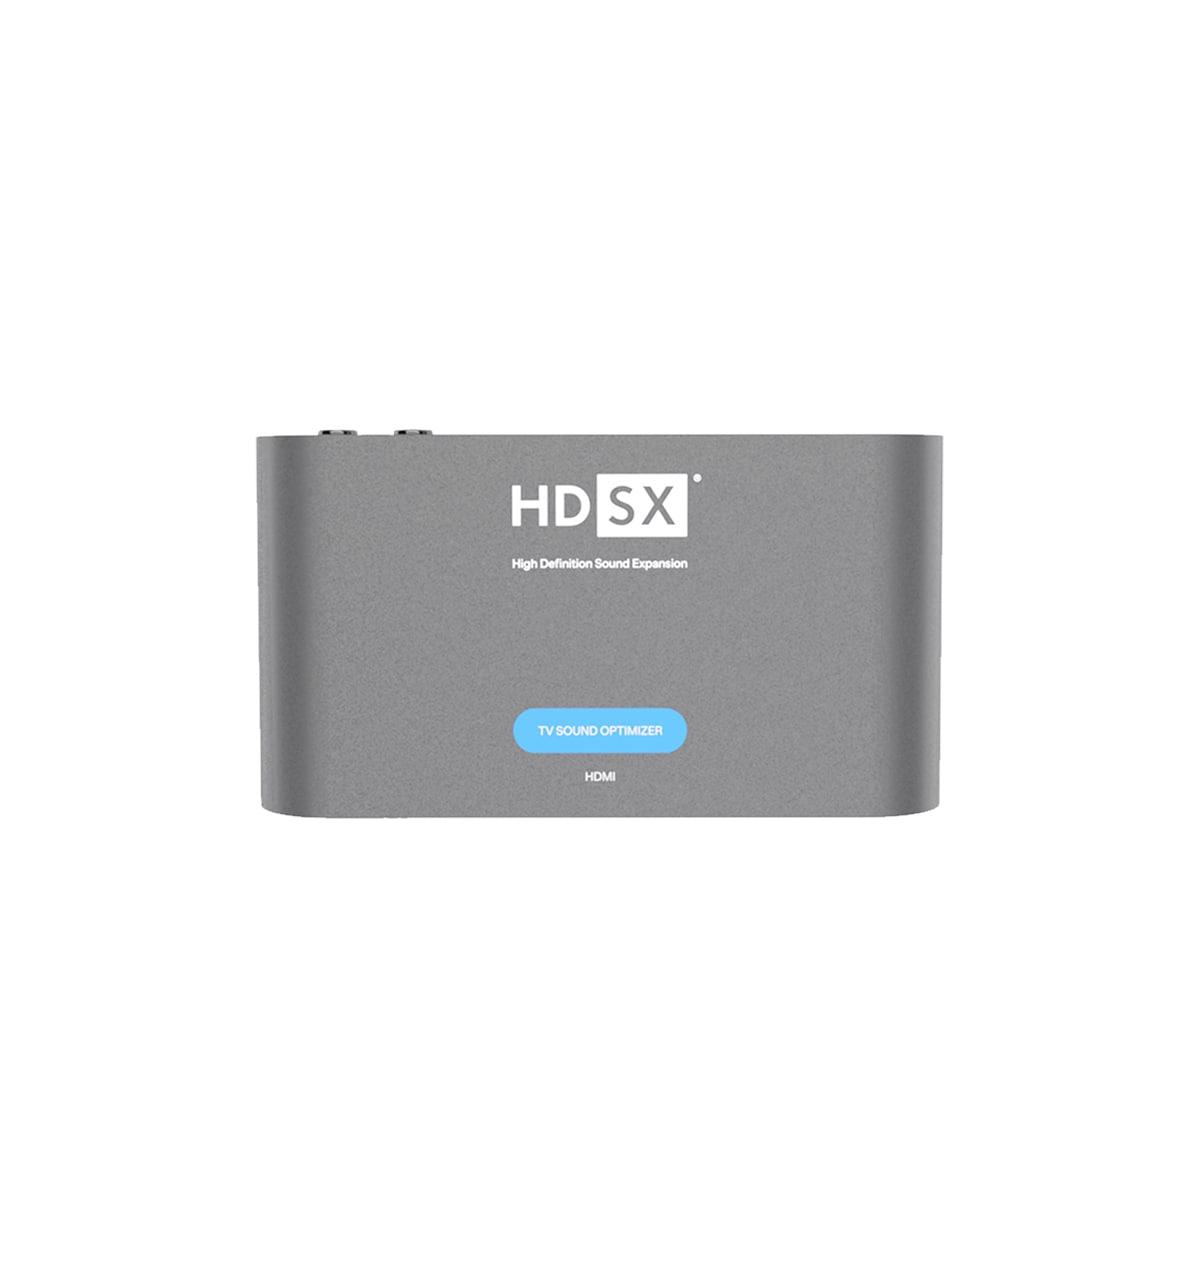 HDMI TV cm HDSX ARC Sound Klangverstärker Optimizer 5,3